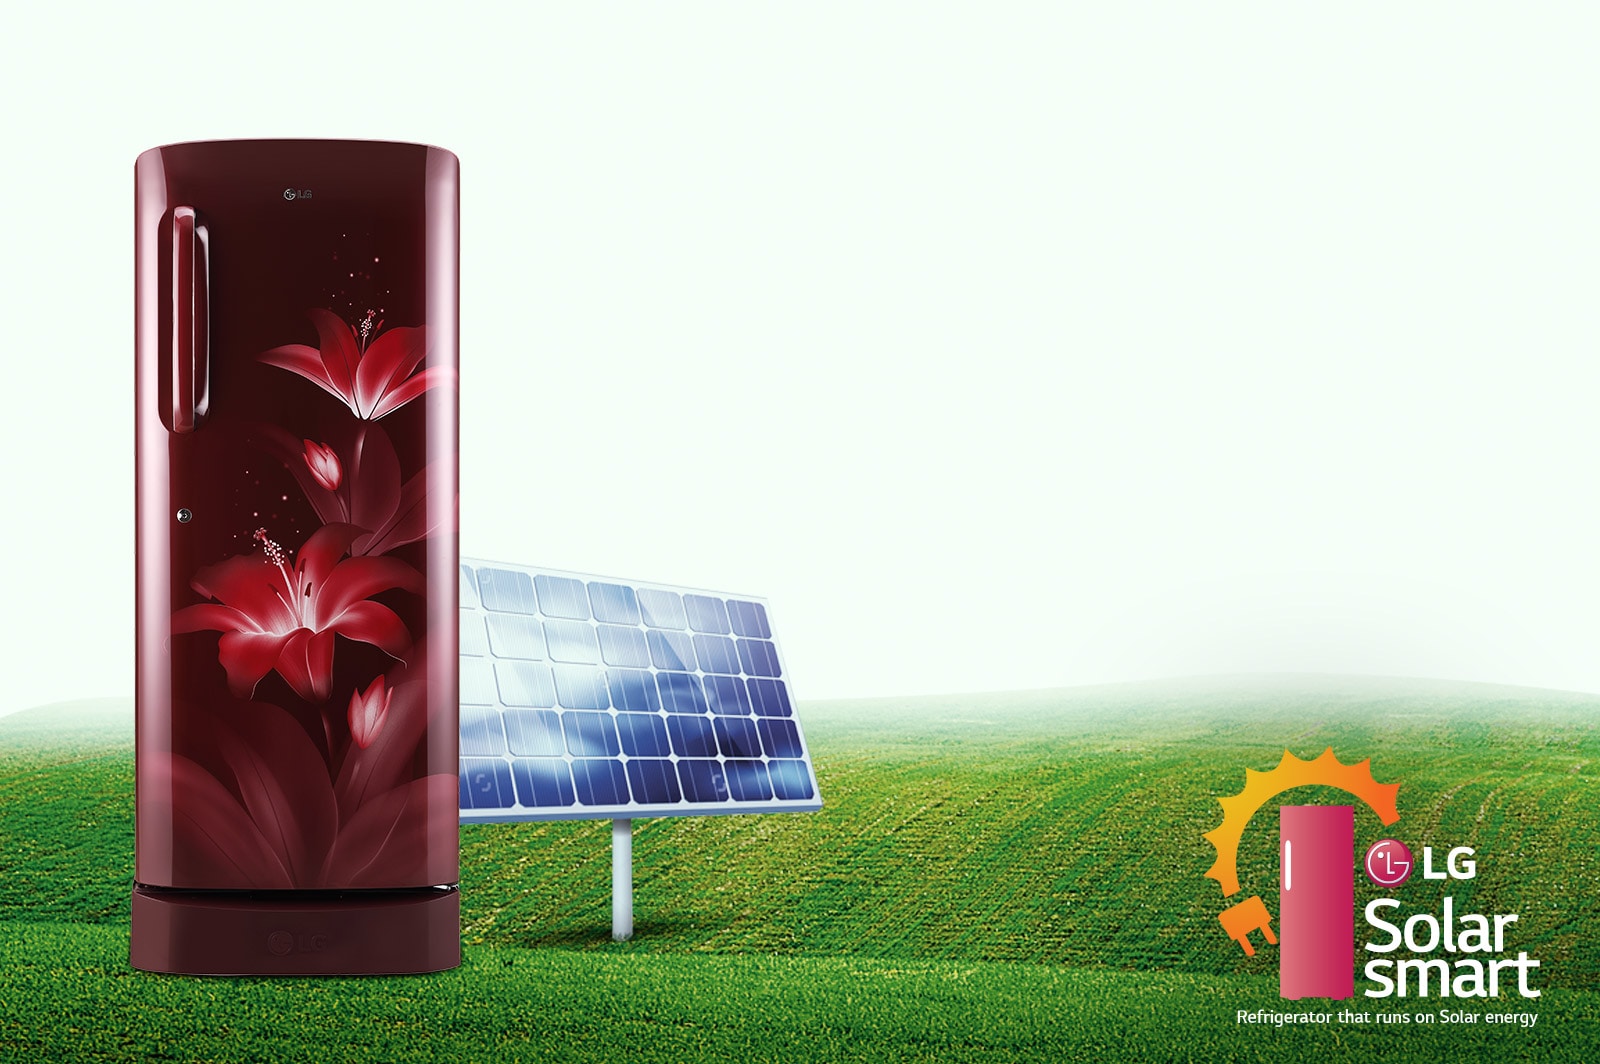 LG Single Door Refrigerator Solar Smart